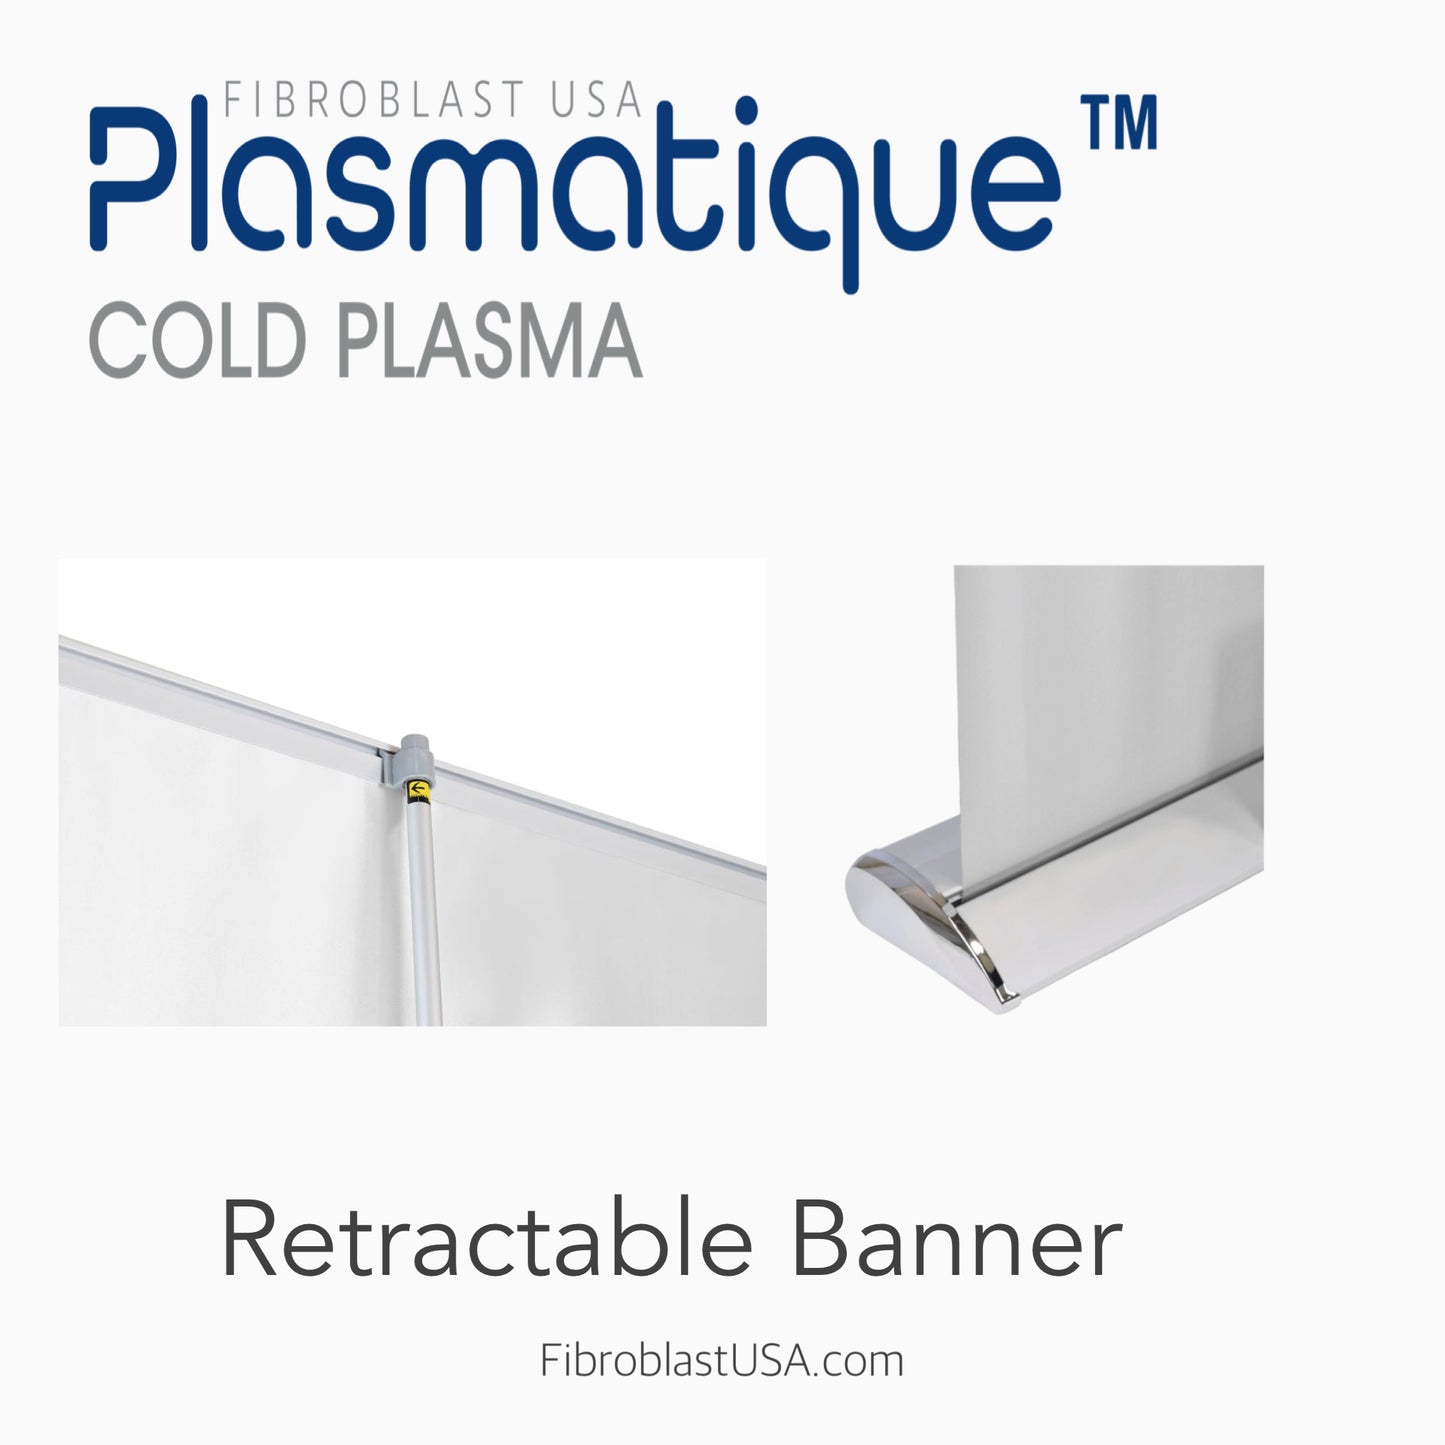 Plasmatique Retractable Banner